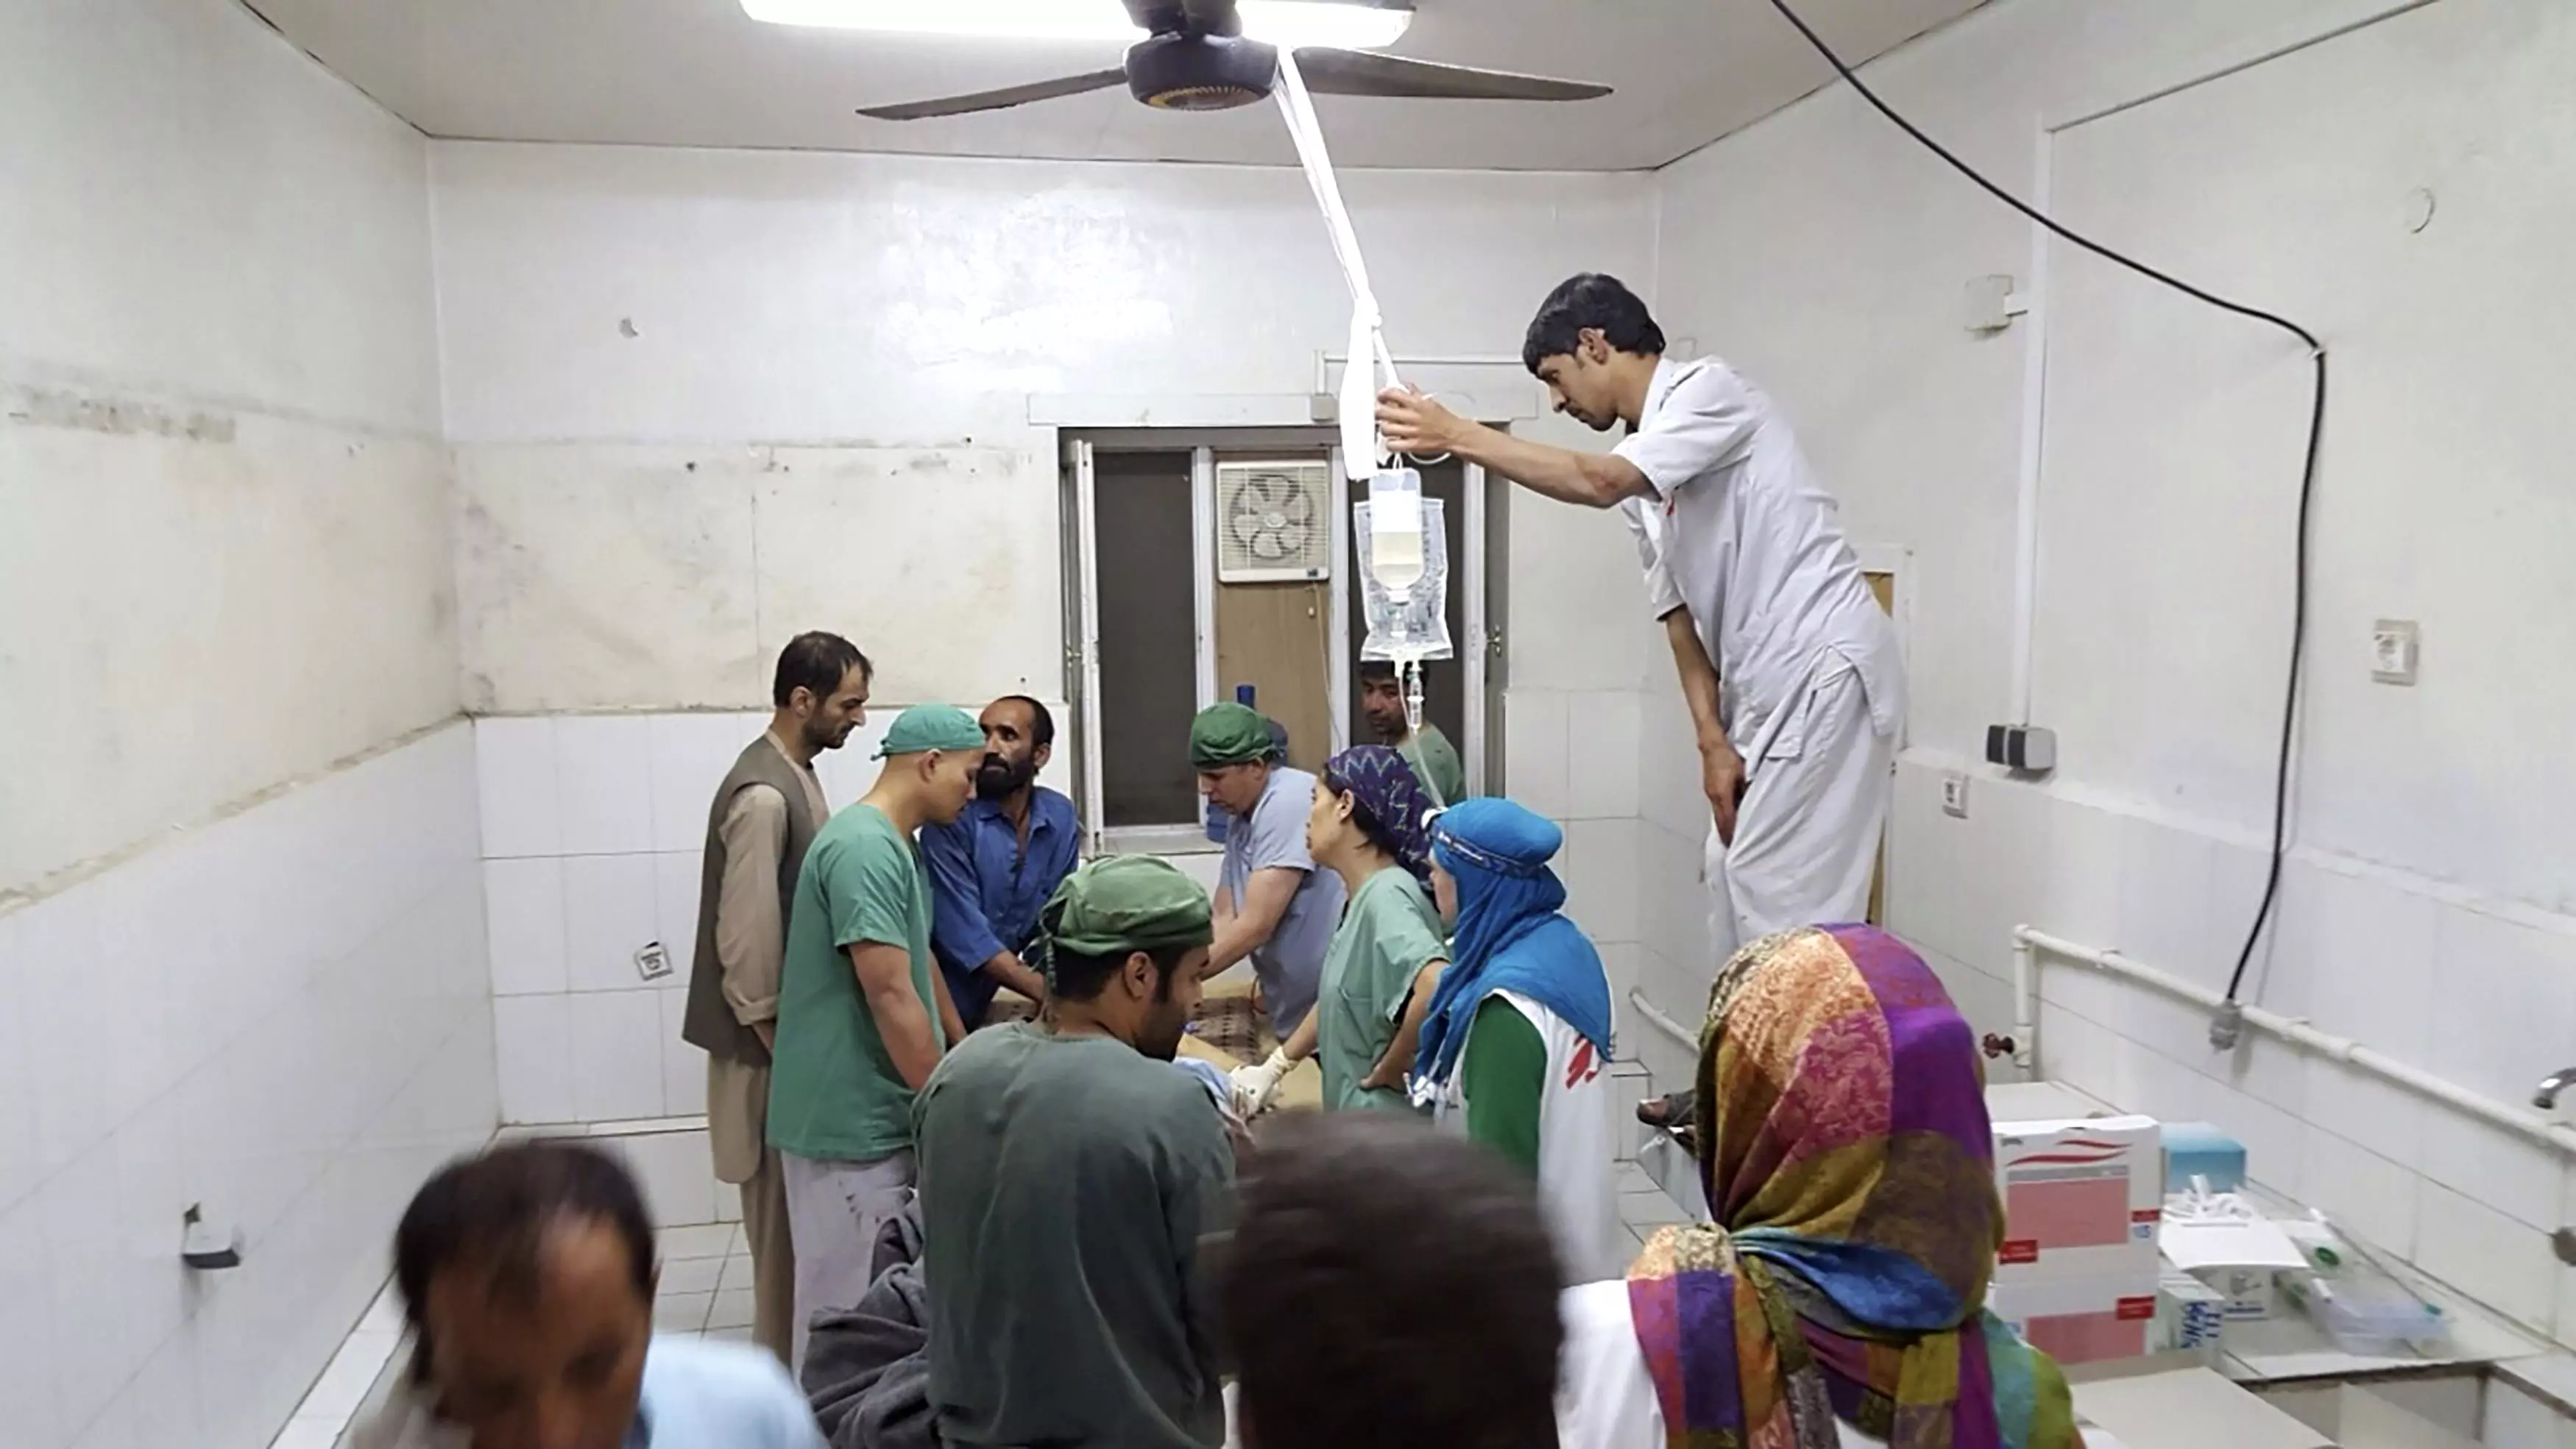 ארה"ב הפציצה בית חולים בקונדוז שבאפגניסטן, אוקטובר 2015